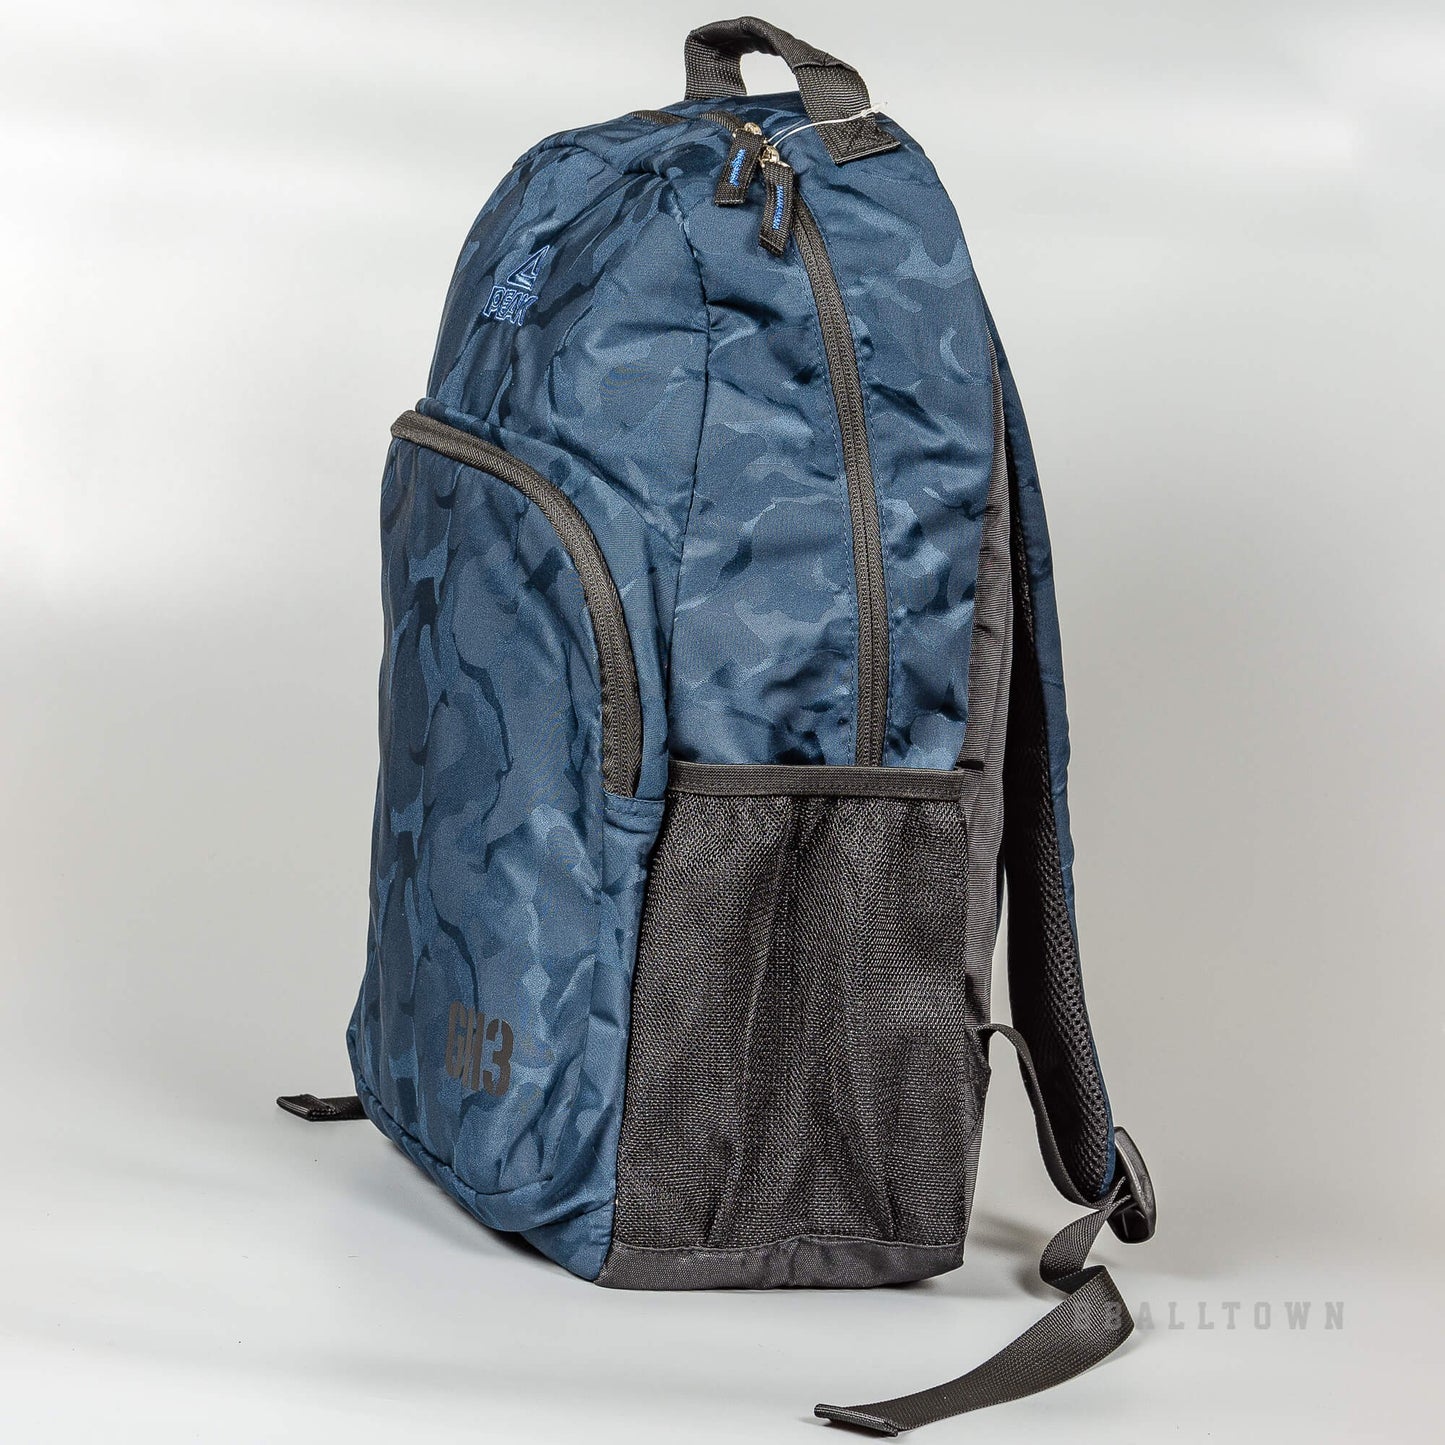 Peak Monster Series Backpack Bright Blue B173160